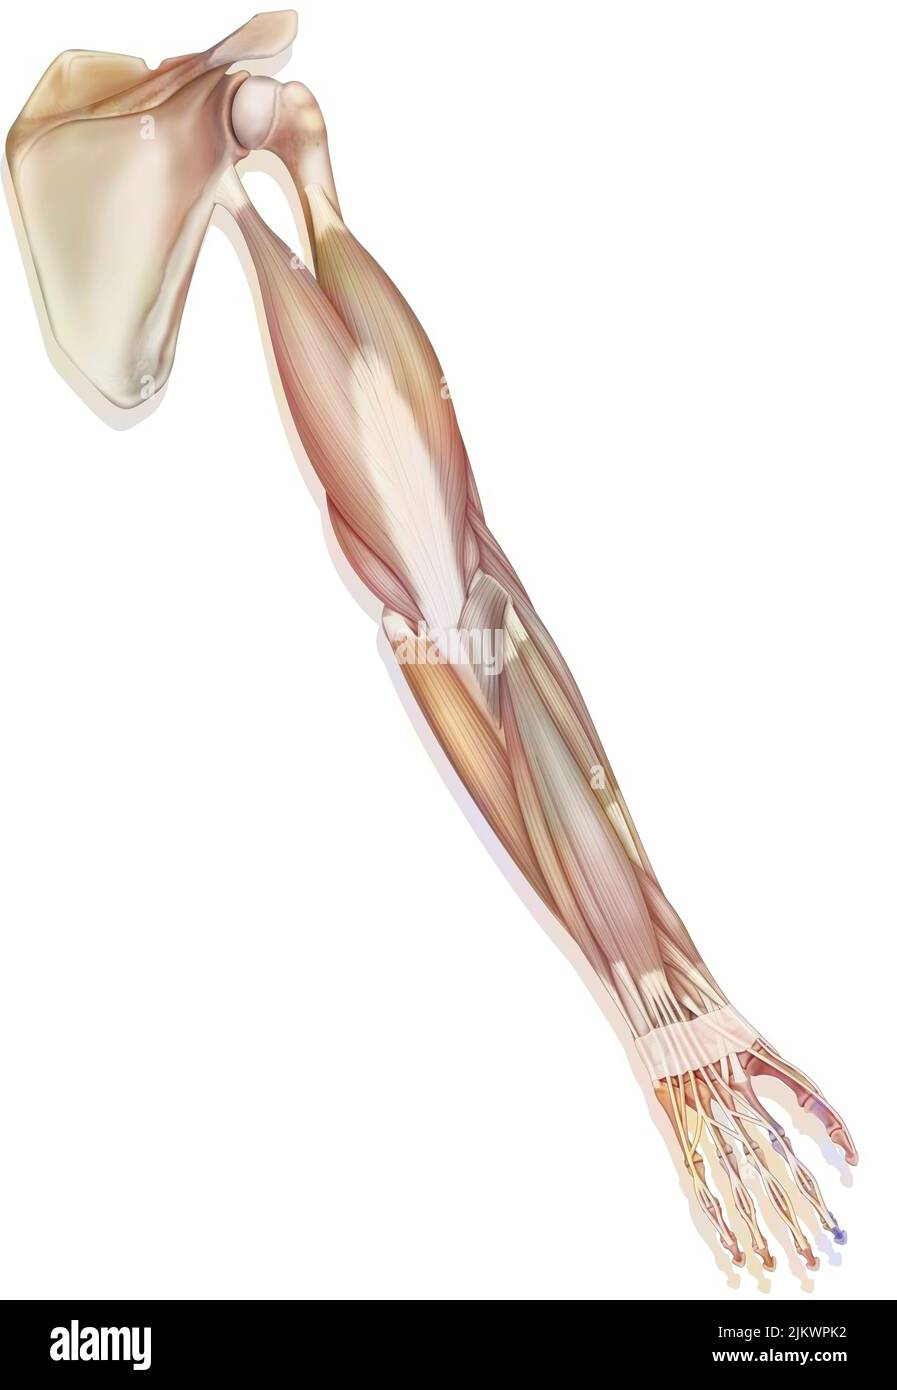 Los músculos de la extremidad superior derecha en vista posterior. Foto de stock